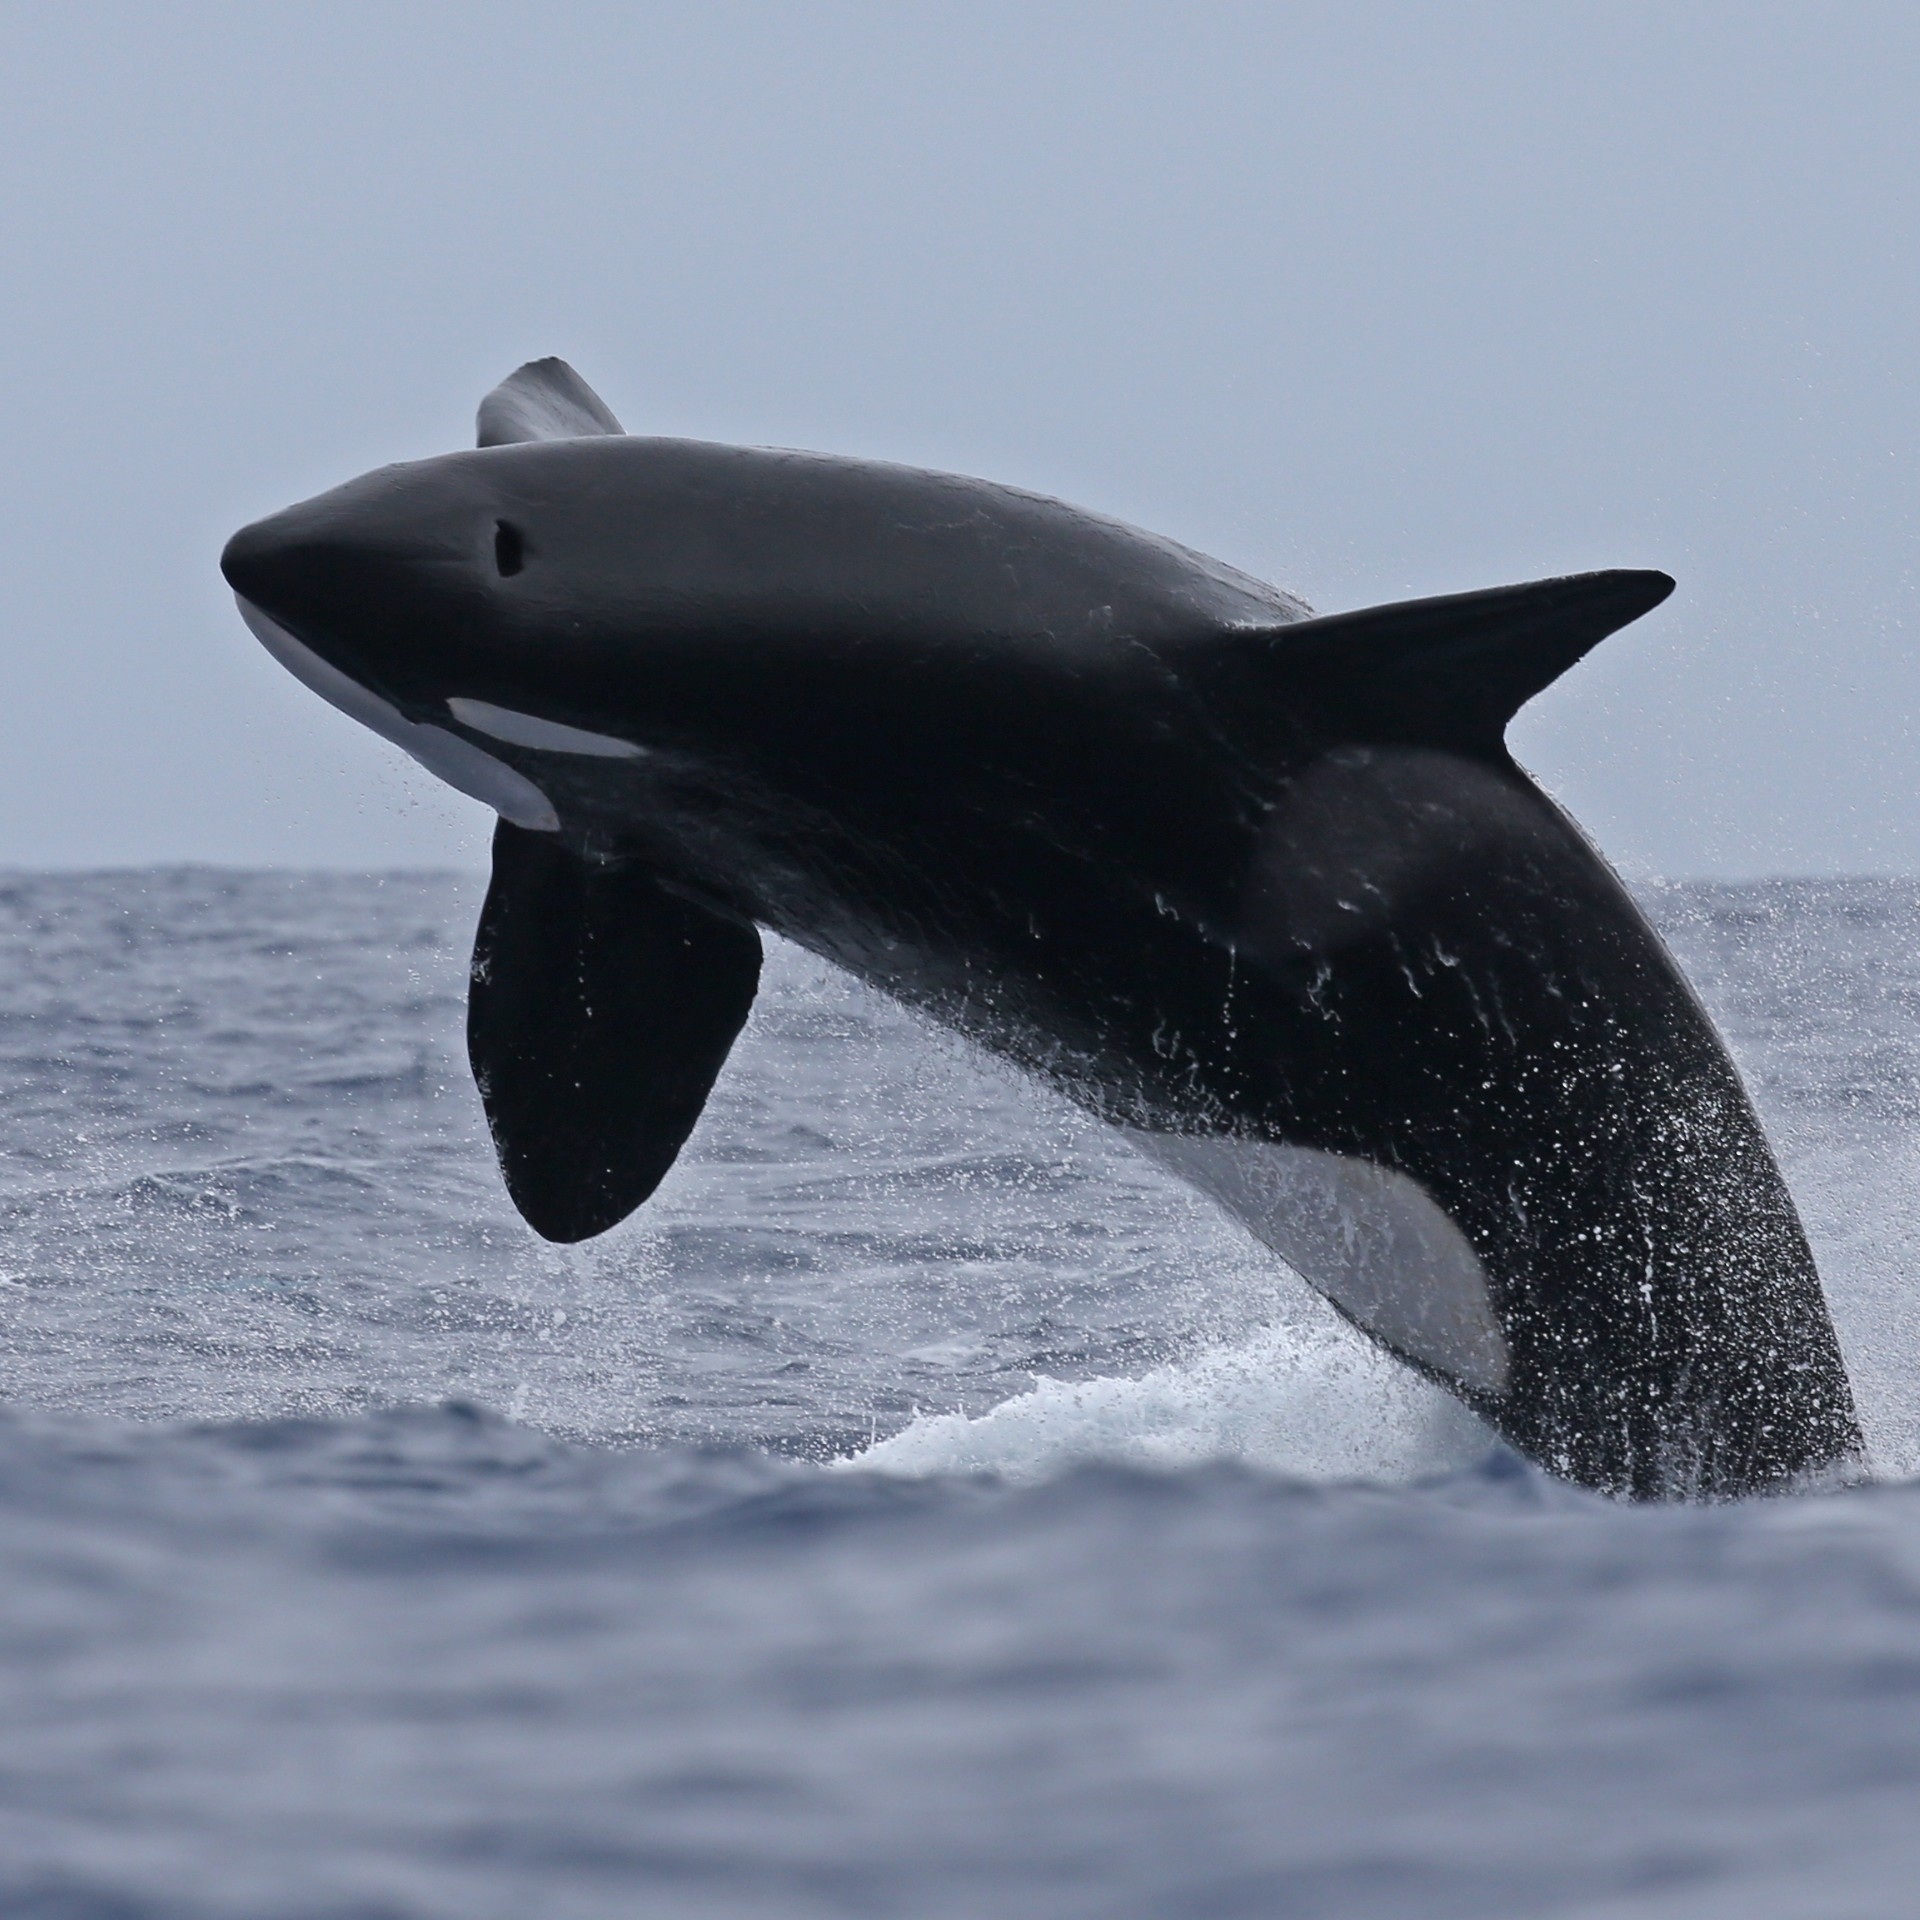 在布雷默湾附近的布雷默峡谷跃身击浪的虎鲸 © 博物学家租船公司版权所有